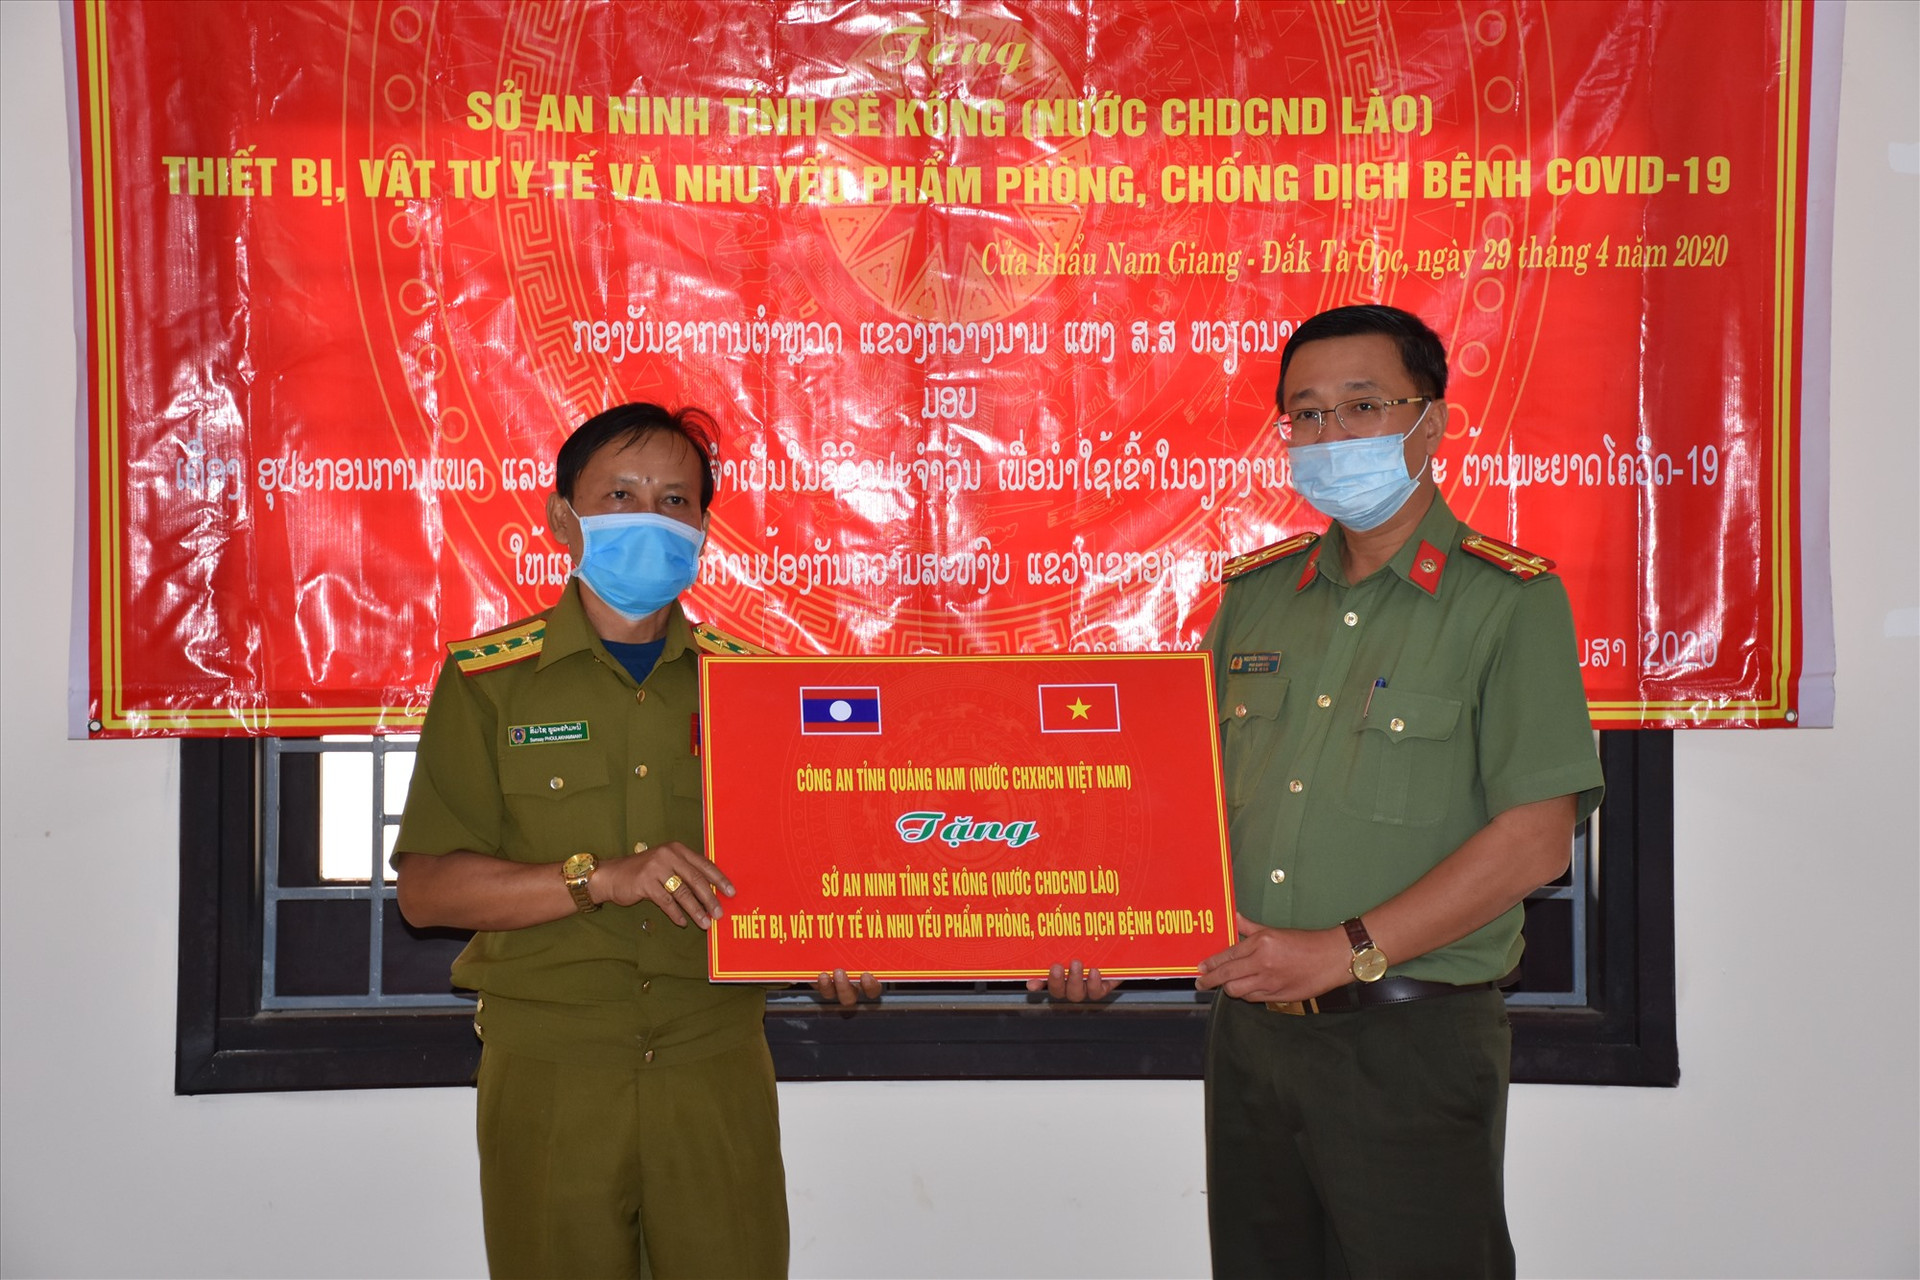 Thượng tá Nguyễn Thành Long. Phó giám đốc Công an tỉnh Quảng Nam tặng quà cho Sở An ninh tỉnh Sê Kông